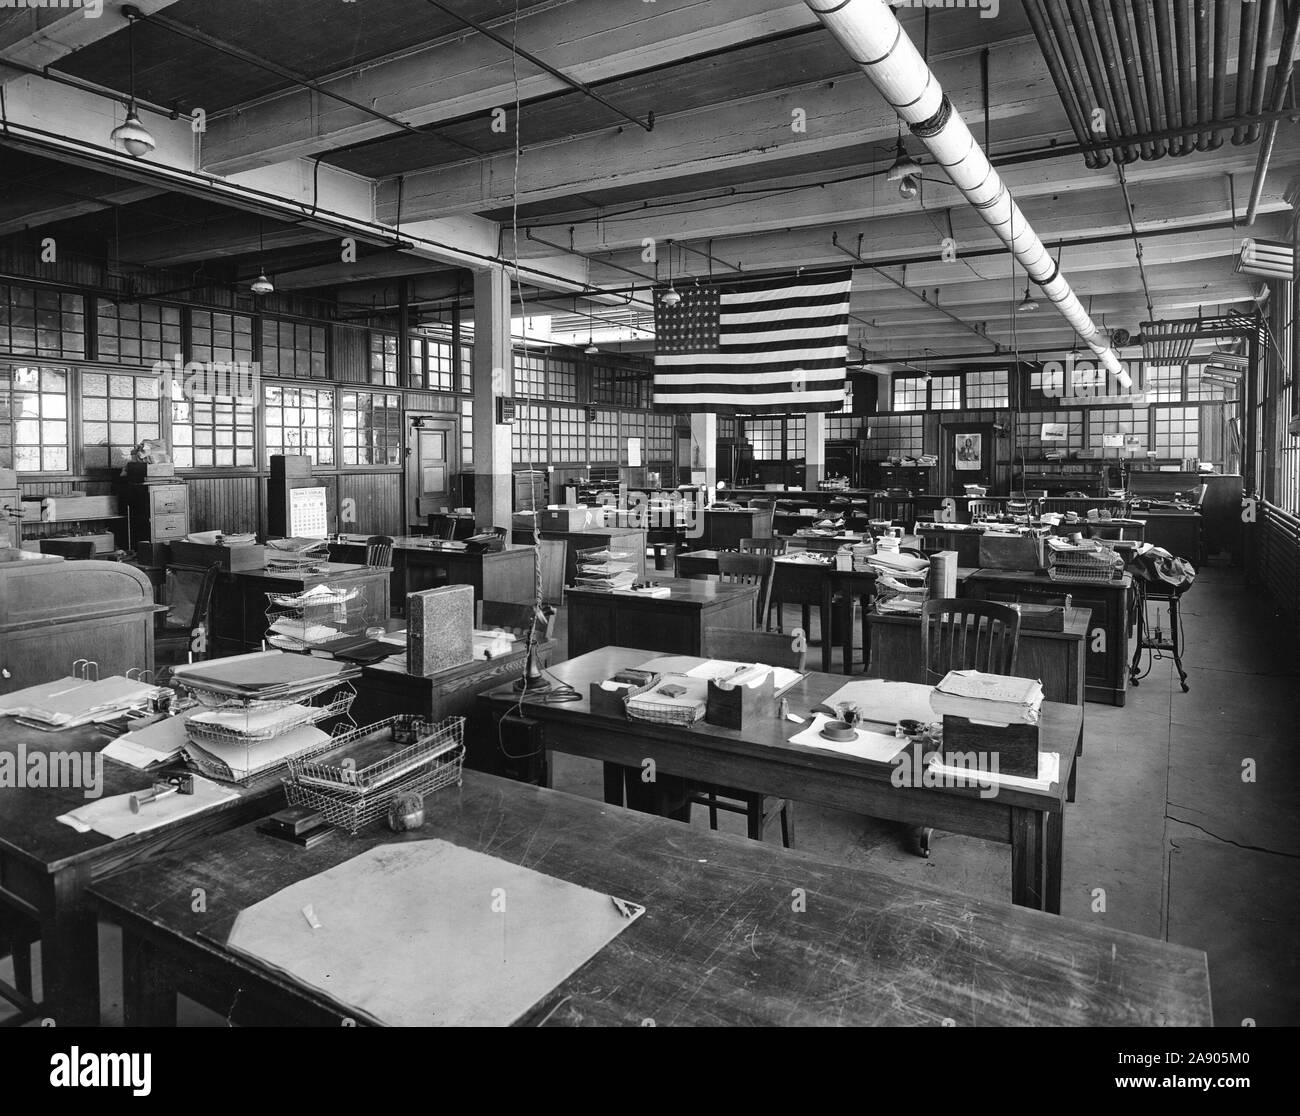 1918 - Alien Property Custodian - Eigentum beschlagnahmt - fremdes Eigentum durch die US-Regierung beschlagnahmt. Eiseman Magneto Co., General Offices, Brooklyn, N.Y Stockfoto